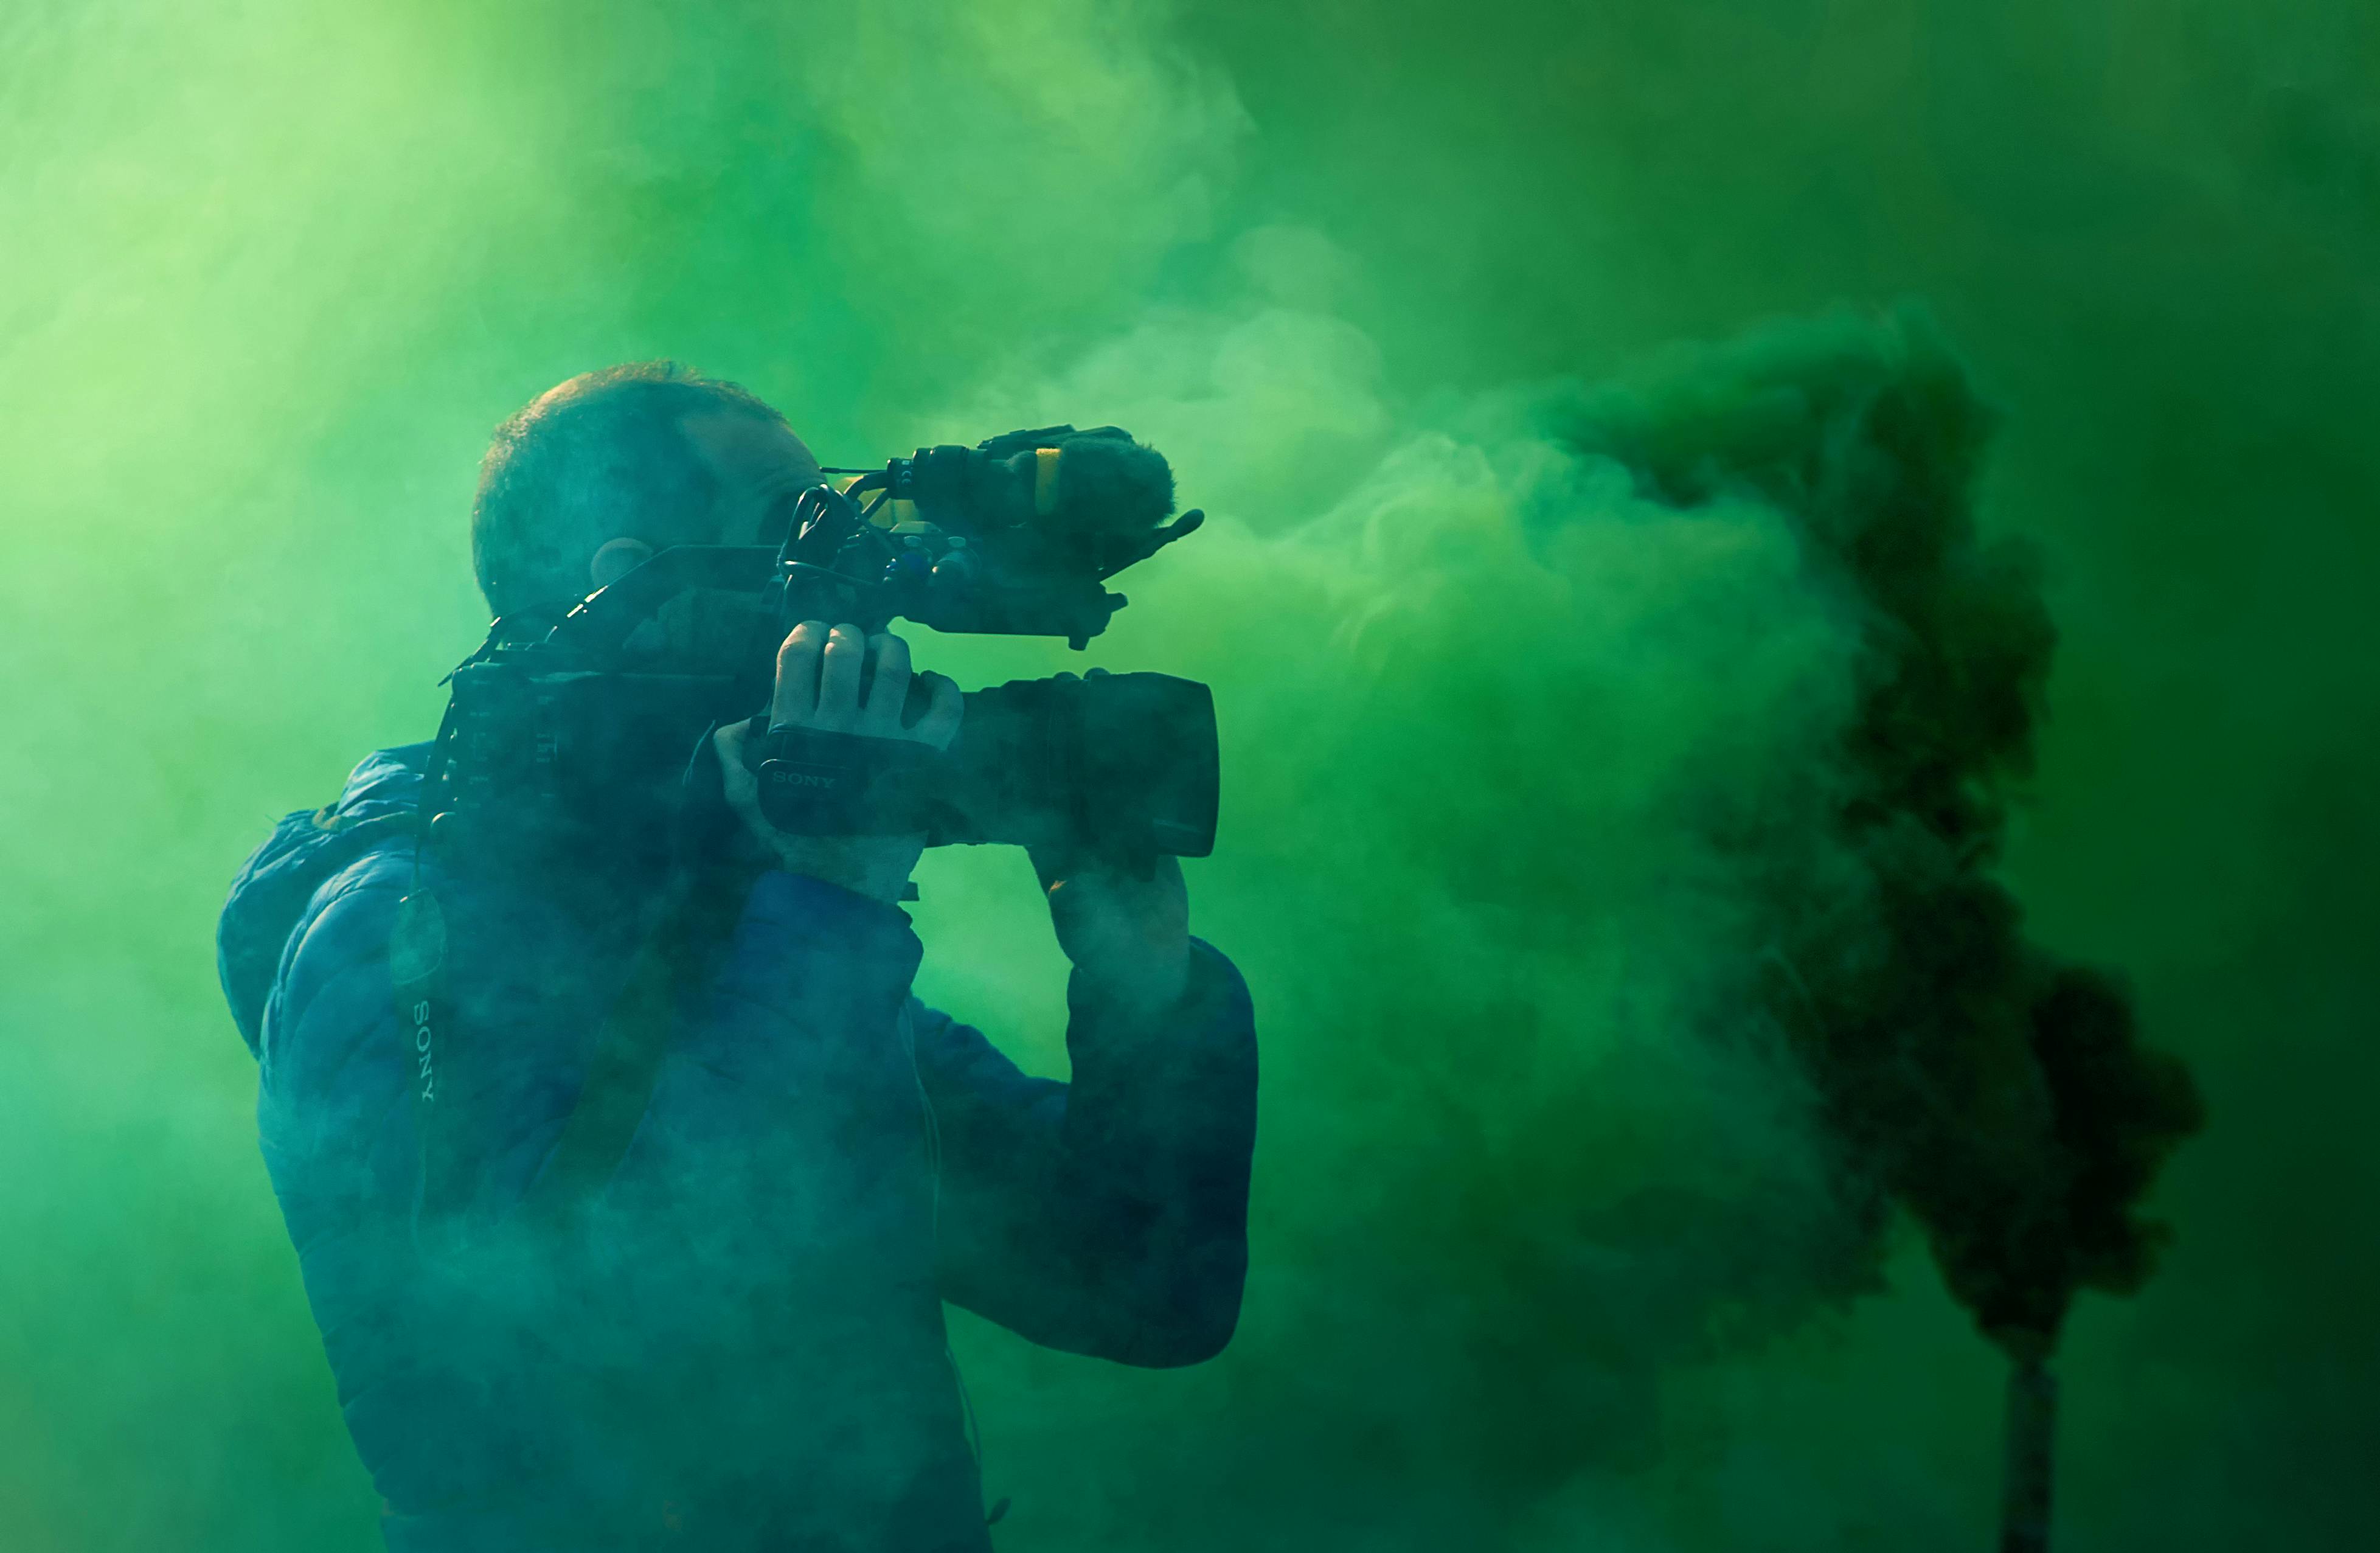 A filmmaker filming smoke on a greenscreen